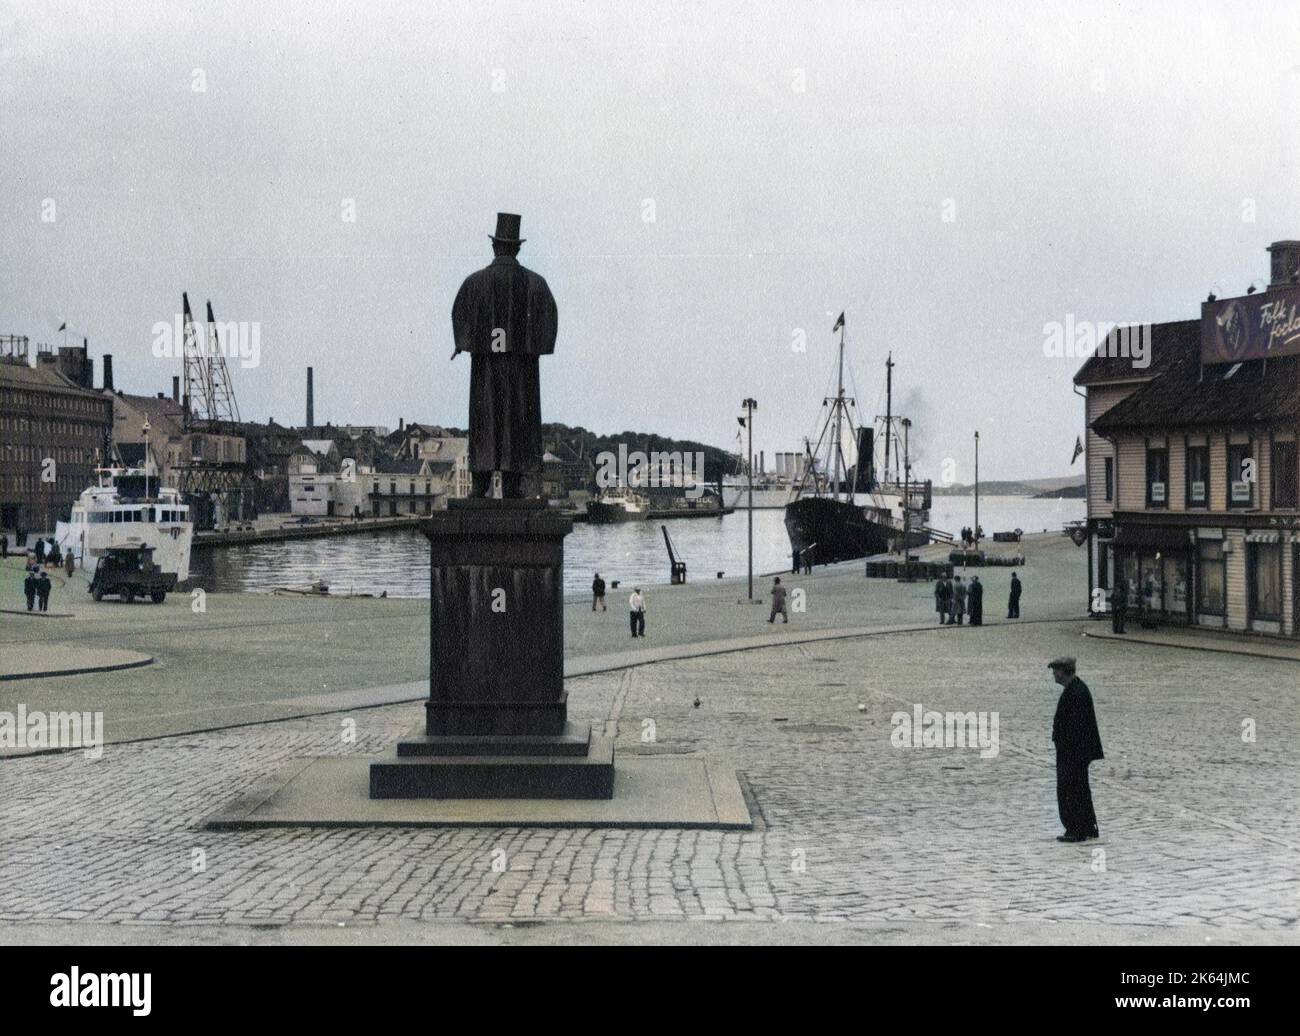 Der Hafen in Stavanger, Norwegen, mit Rückblick auf die Statue von Alexander lange Kielland (1849?1906), einem der berühmtesten norwegischen realistischen Schriftsteller des 19. Jahrhunderts. Stockfoto